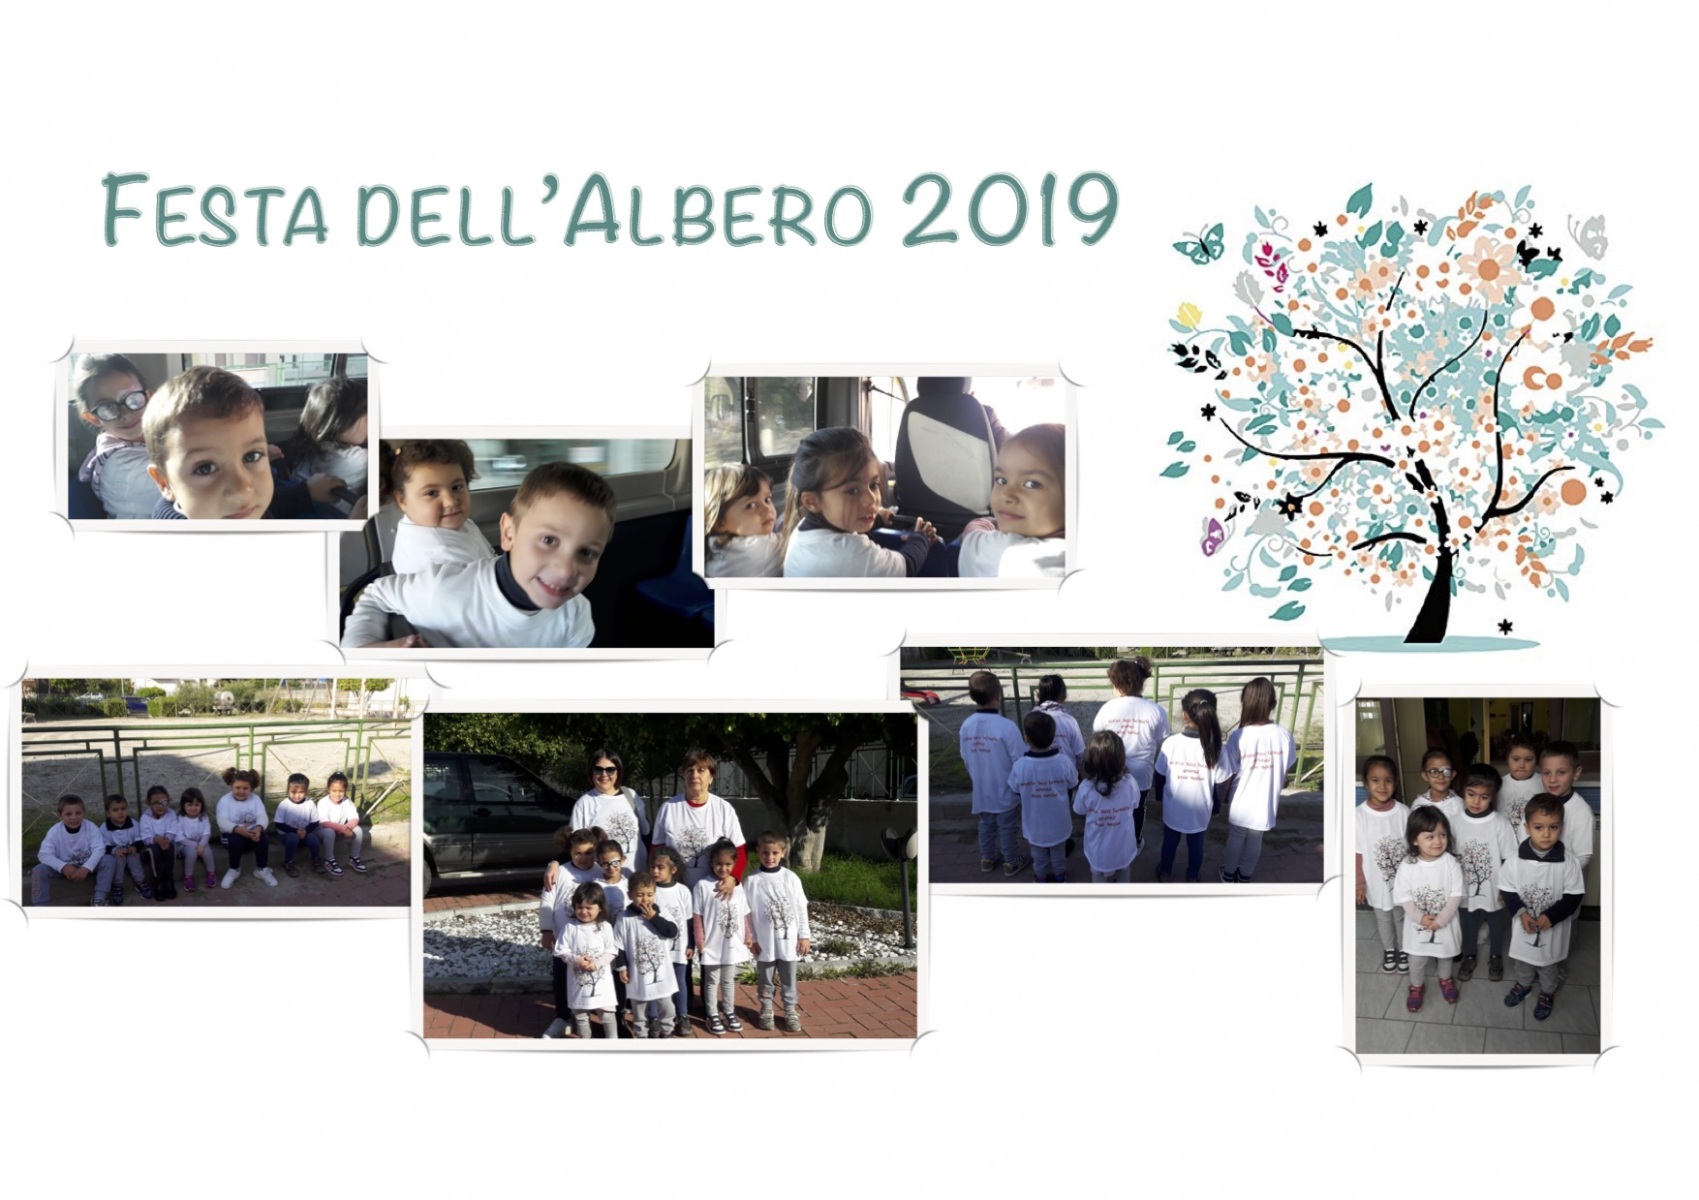 Festa dell'Albero 2019